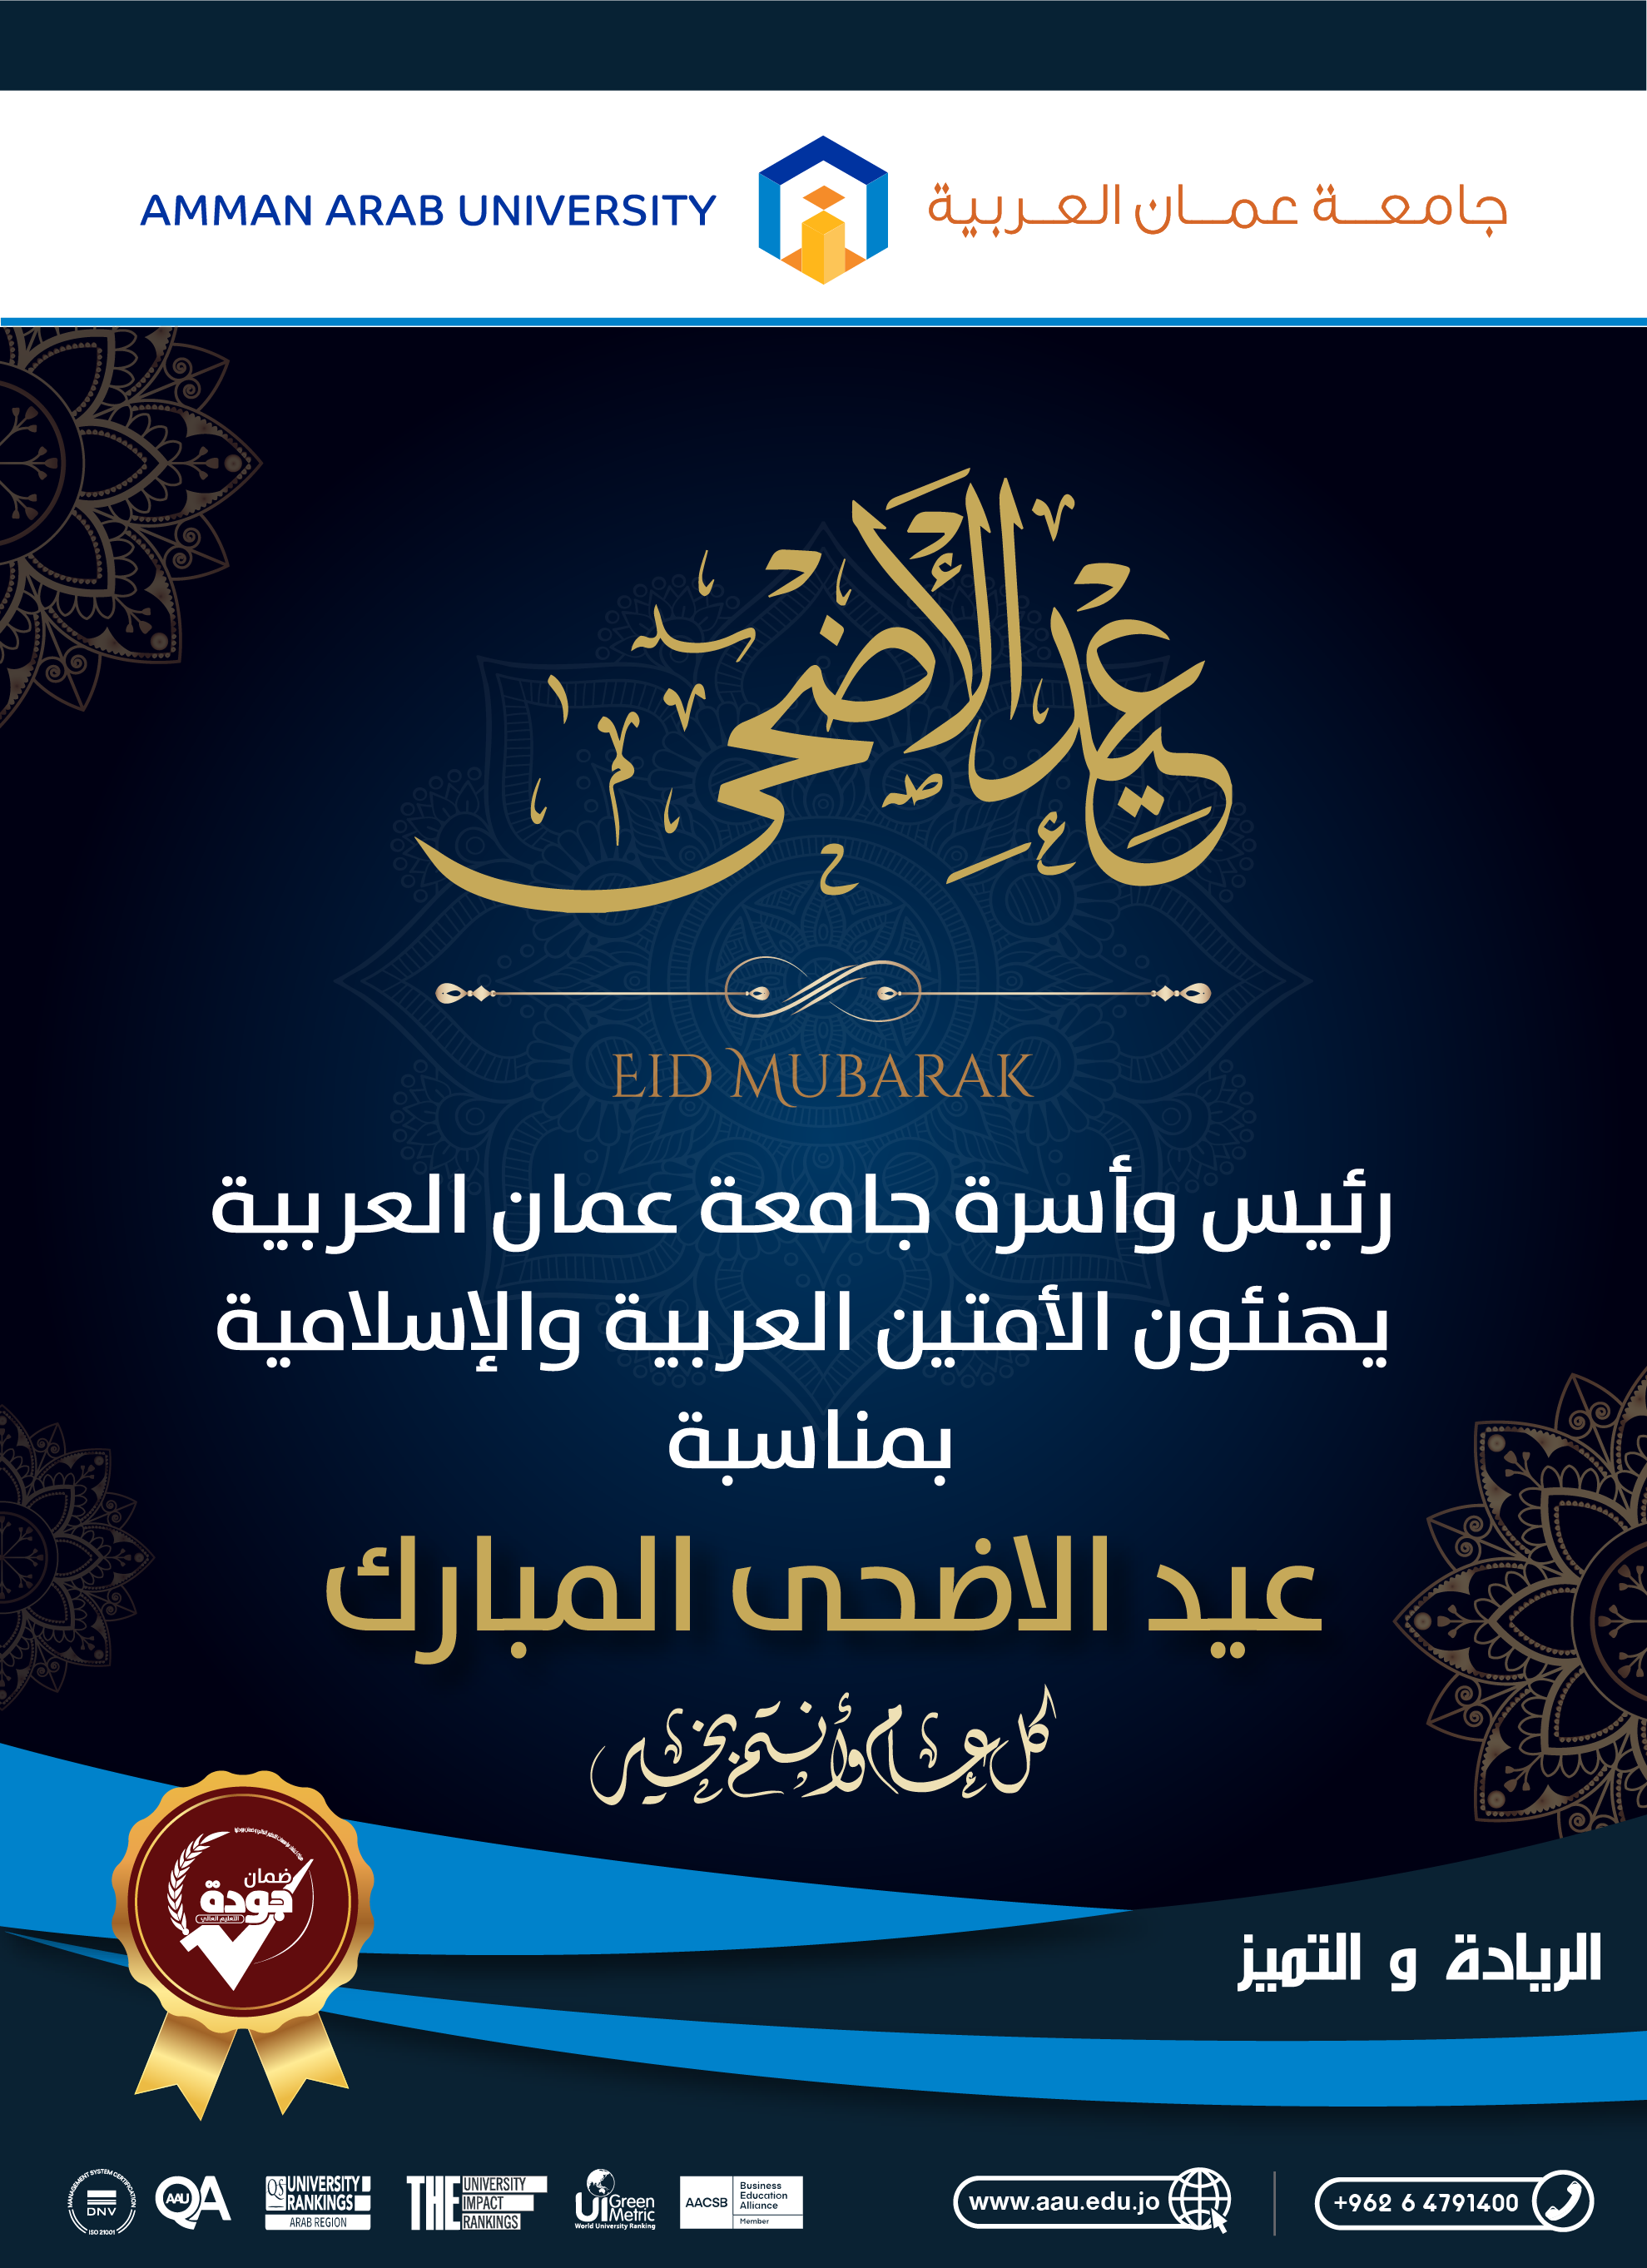 رئيس وأسرة جامعة عمان العربية يهنئون الأمتين العربية والإسلامية بمناسبة عيد الأضحى المبارك وكل عام وأنتم بخير